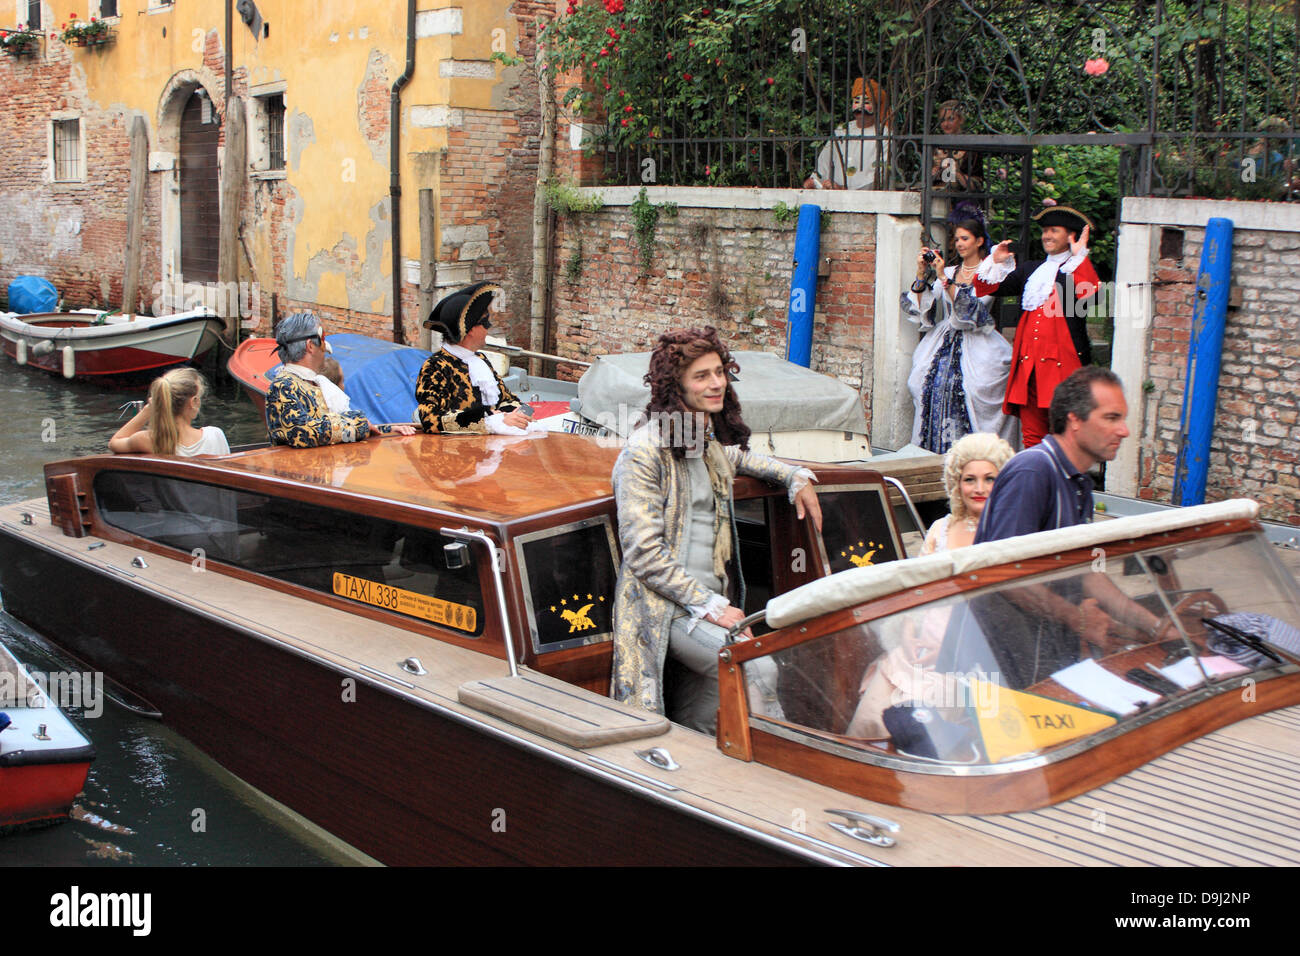 Carnaval de Venise, Italie. Les gens en costume d'arriver à un carnaval partie en bateau-taxi. Banque D'Images